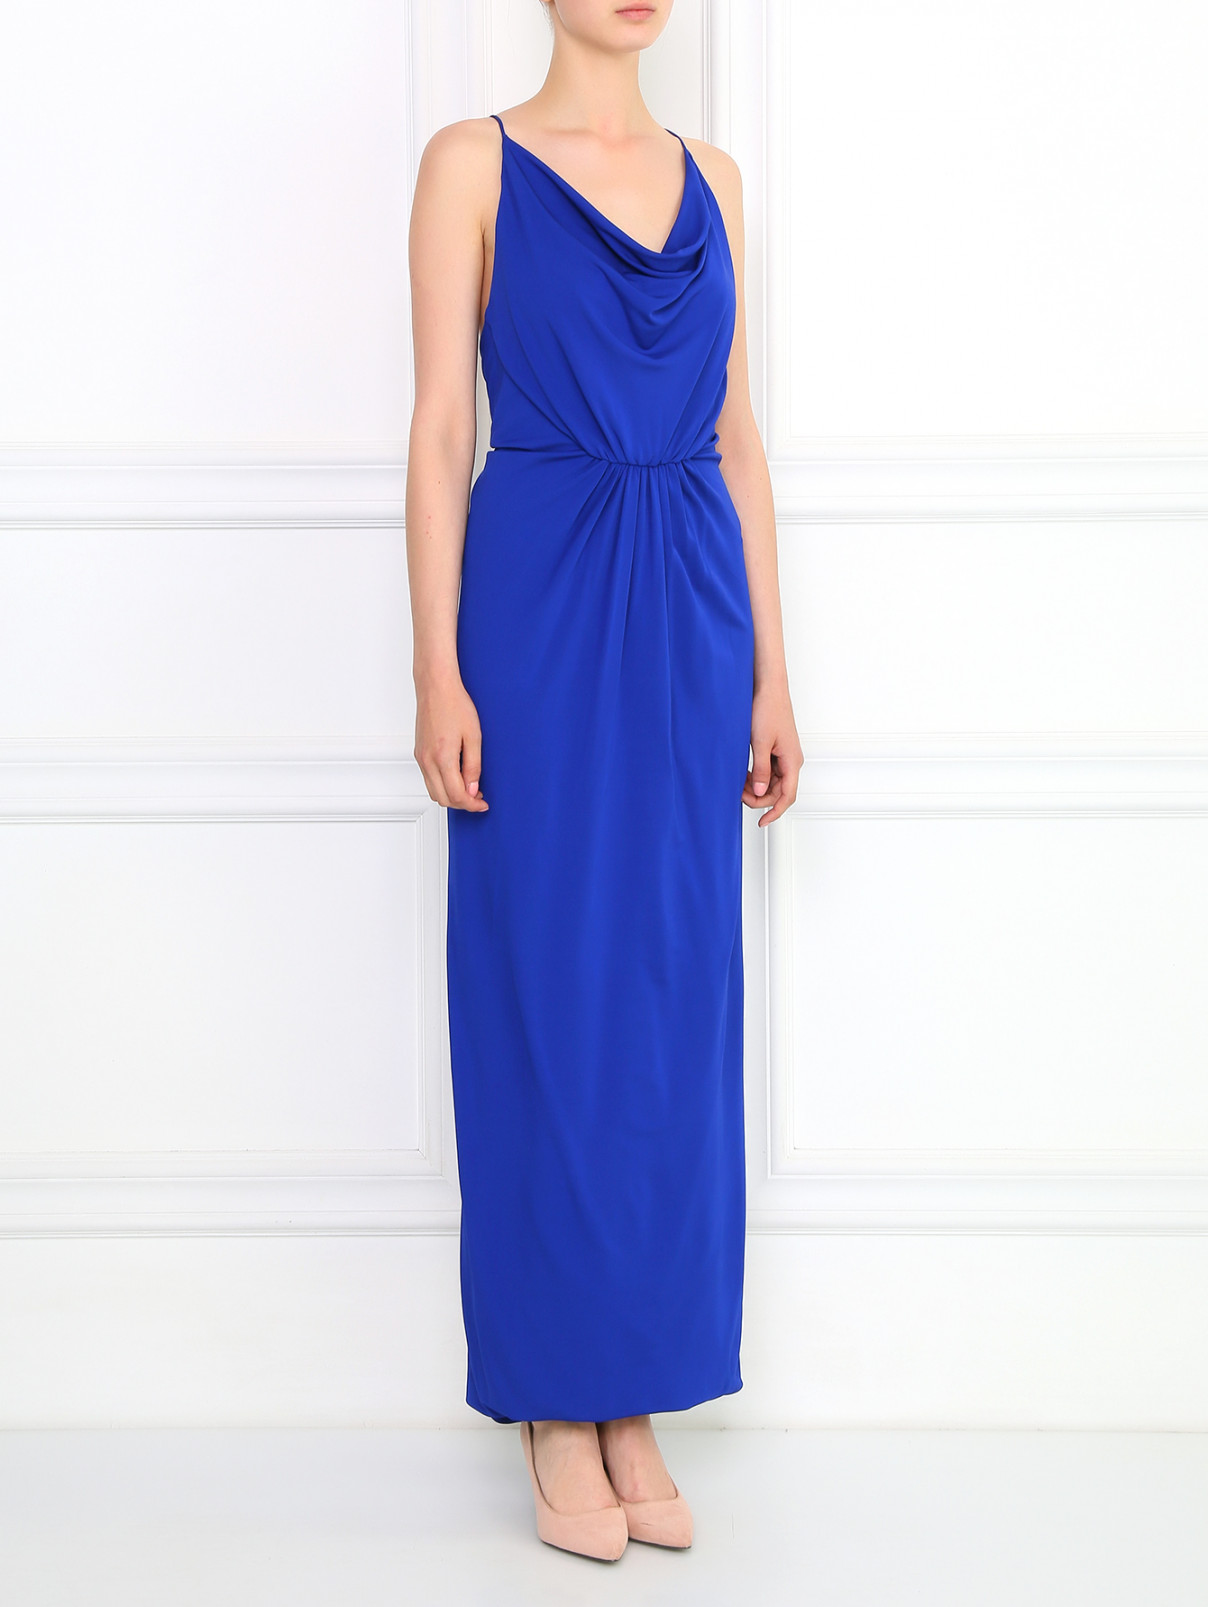 Платье-макси с драпировкой Cut 25  –  Модель Общий вид  – Цвет:  Синий